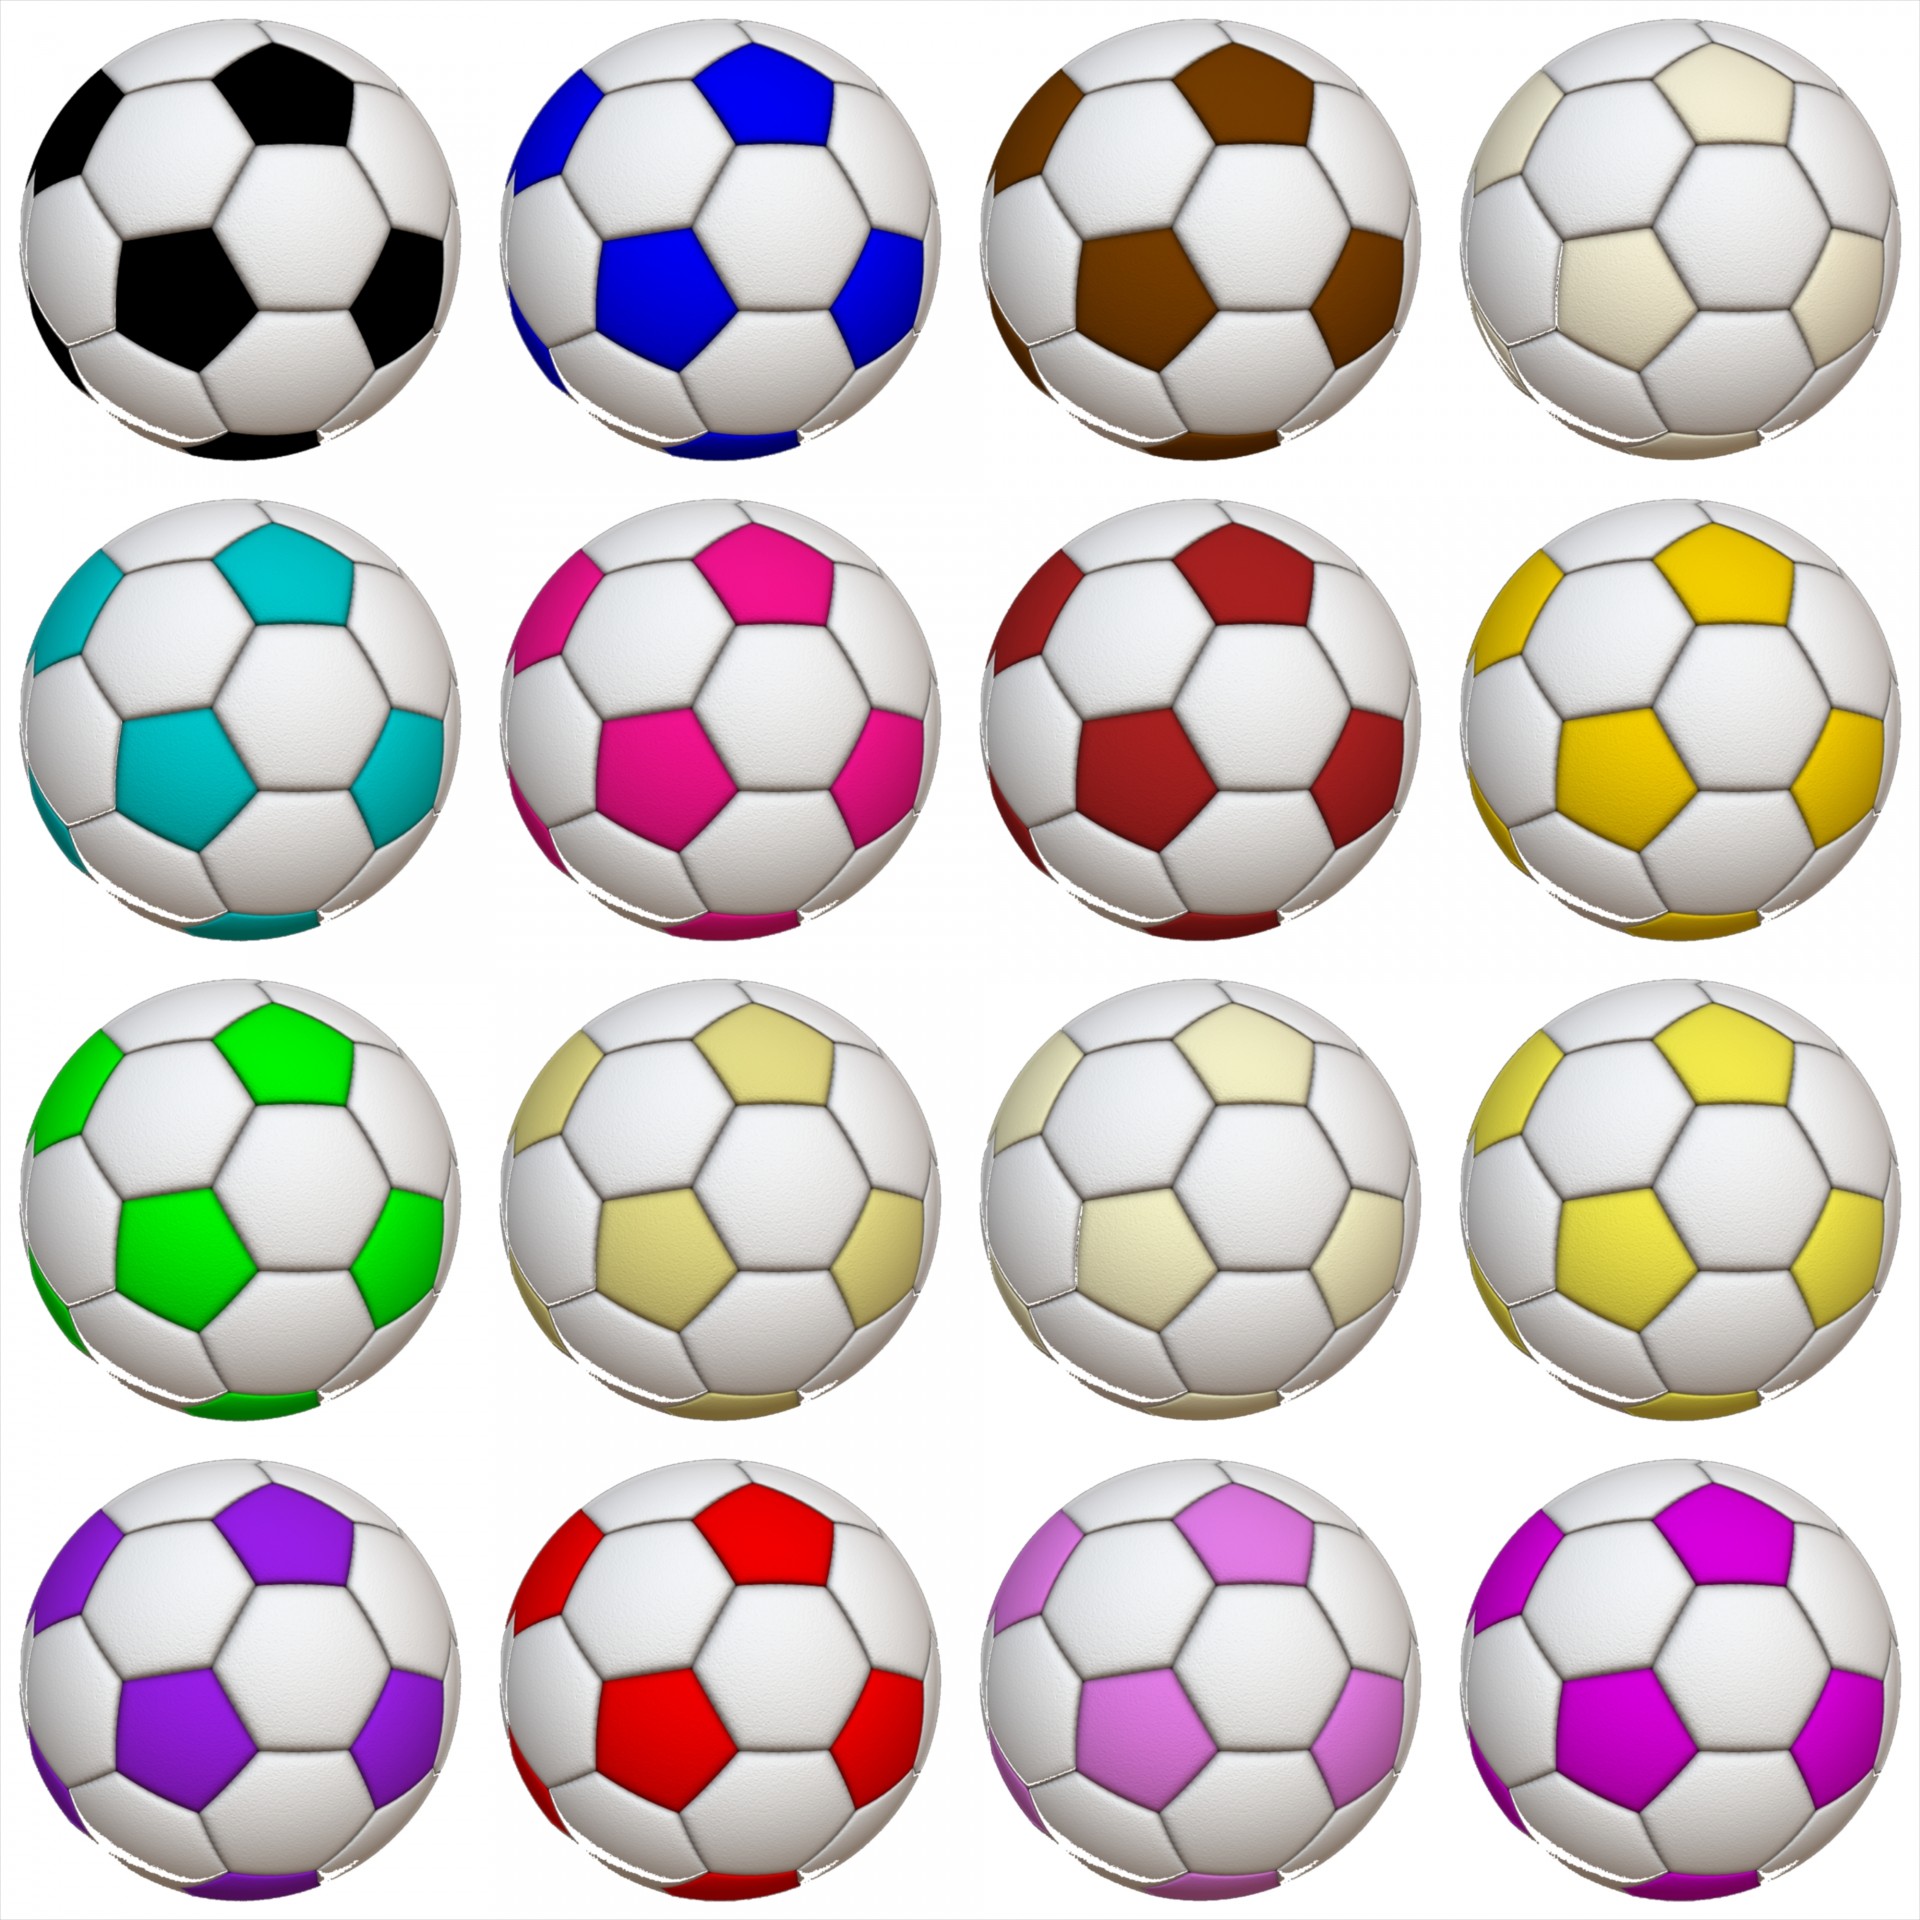 Девять мячей. Мяч "футбол". Ребенок с футбольным мячом. Разноцветный футбольный мяч. Мячи в ряд.